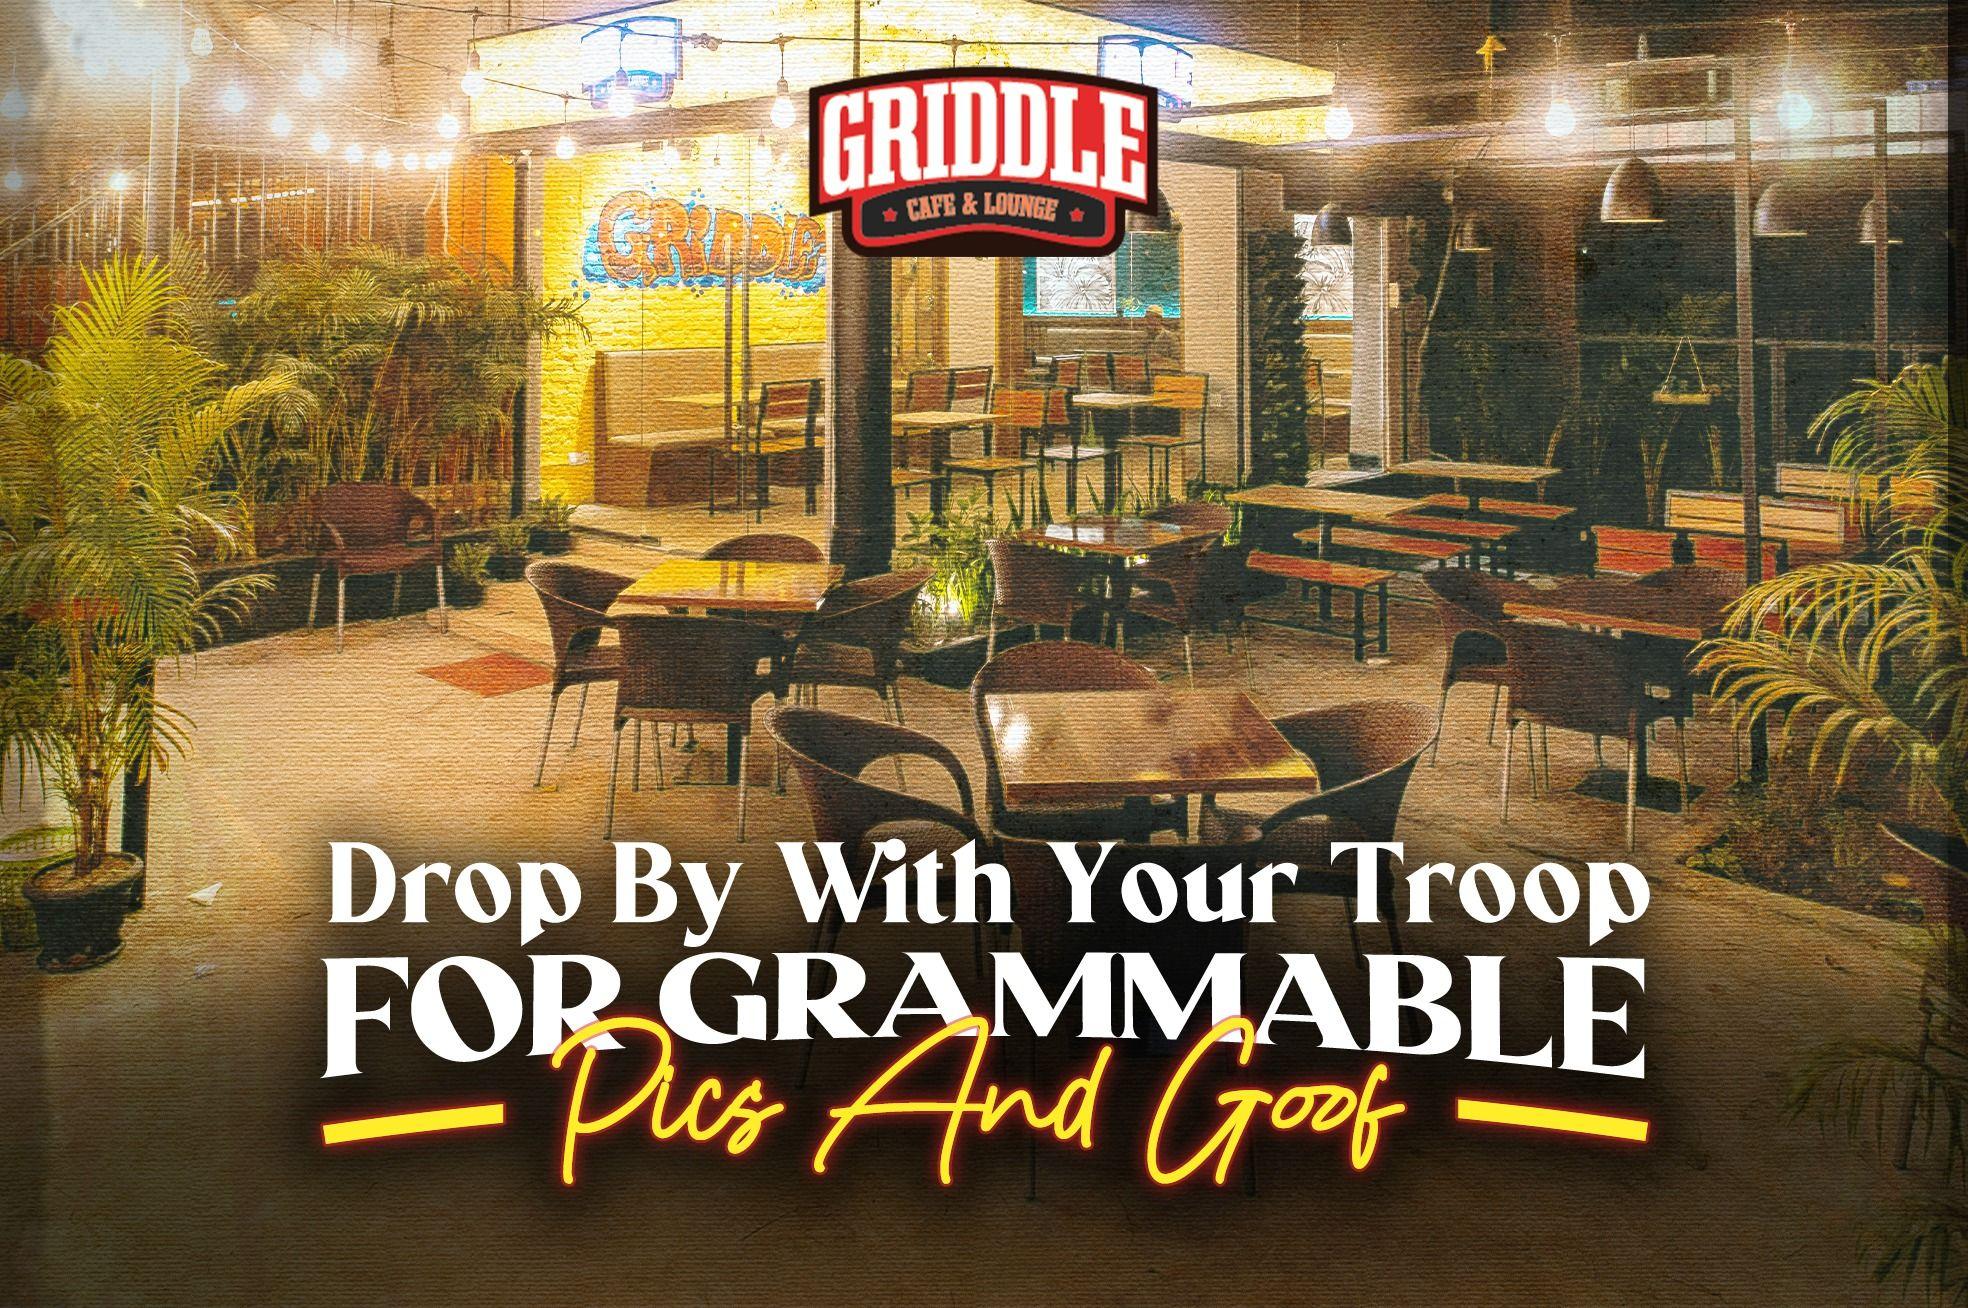 Griddle Cafe & Lounge (Dhanmondi)